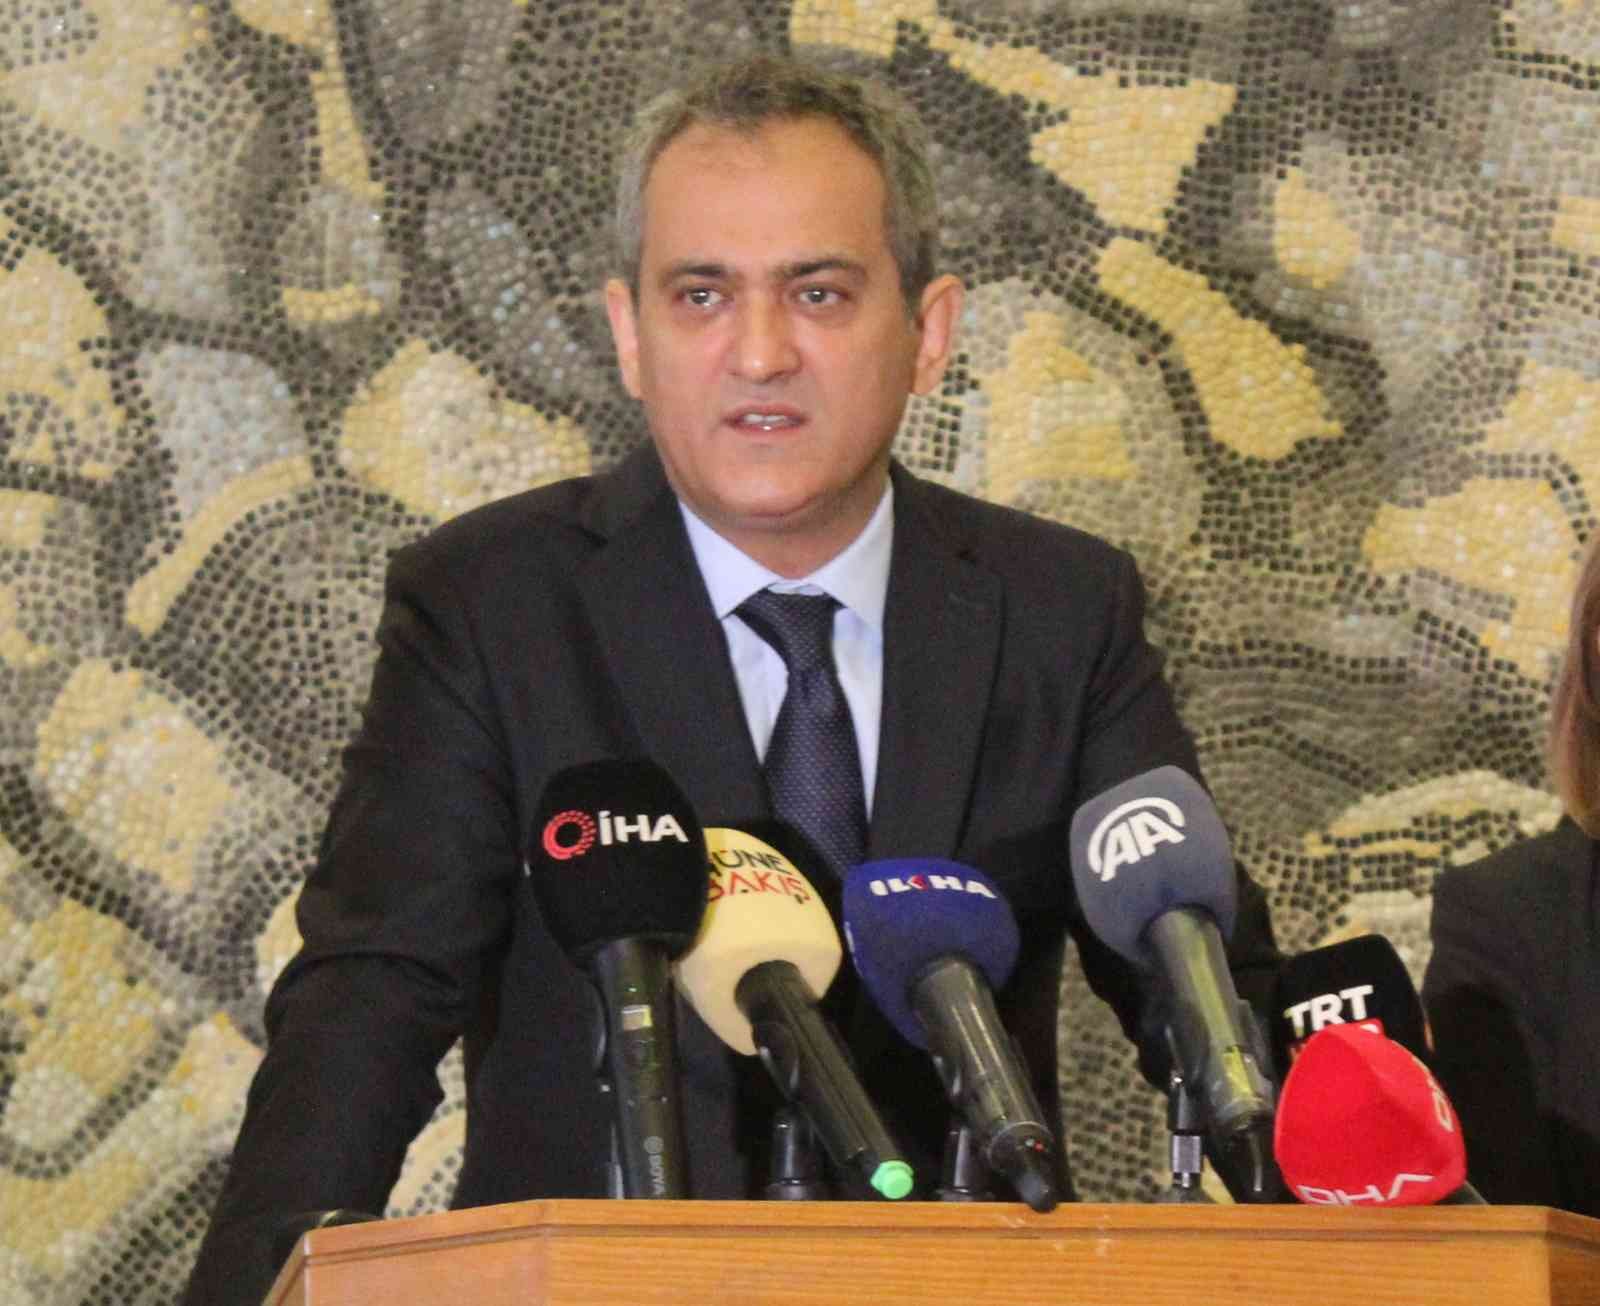 Bakan Özer, Gaziantep’teki eğitim yatırımları hakkında bilgi verdi #gaziantep